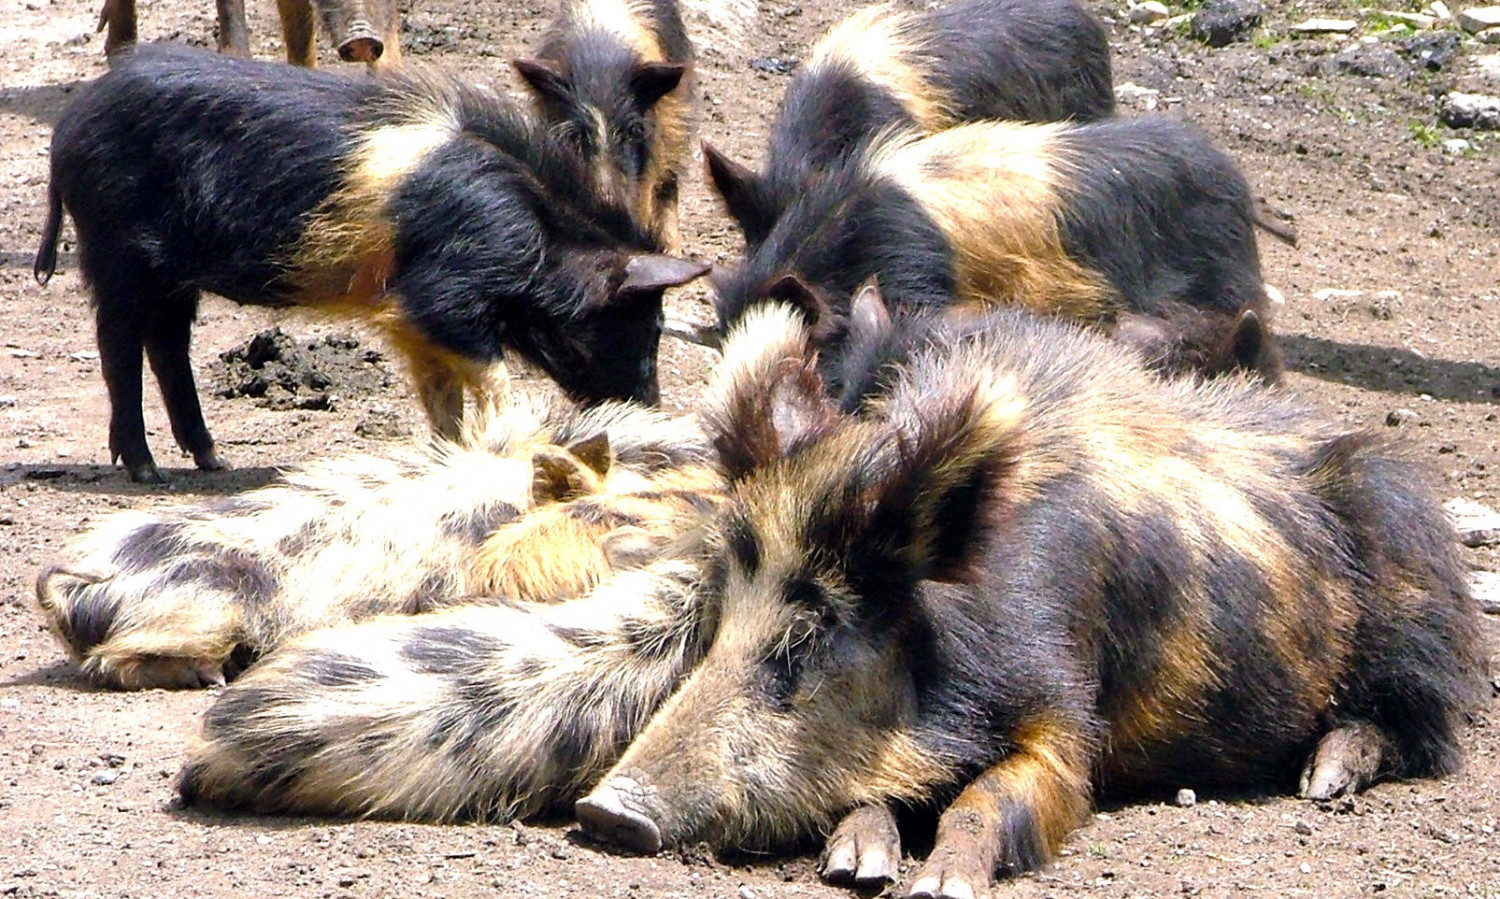 Svanetian Pigs